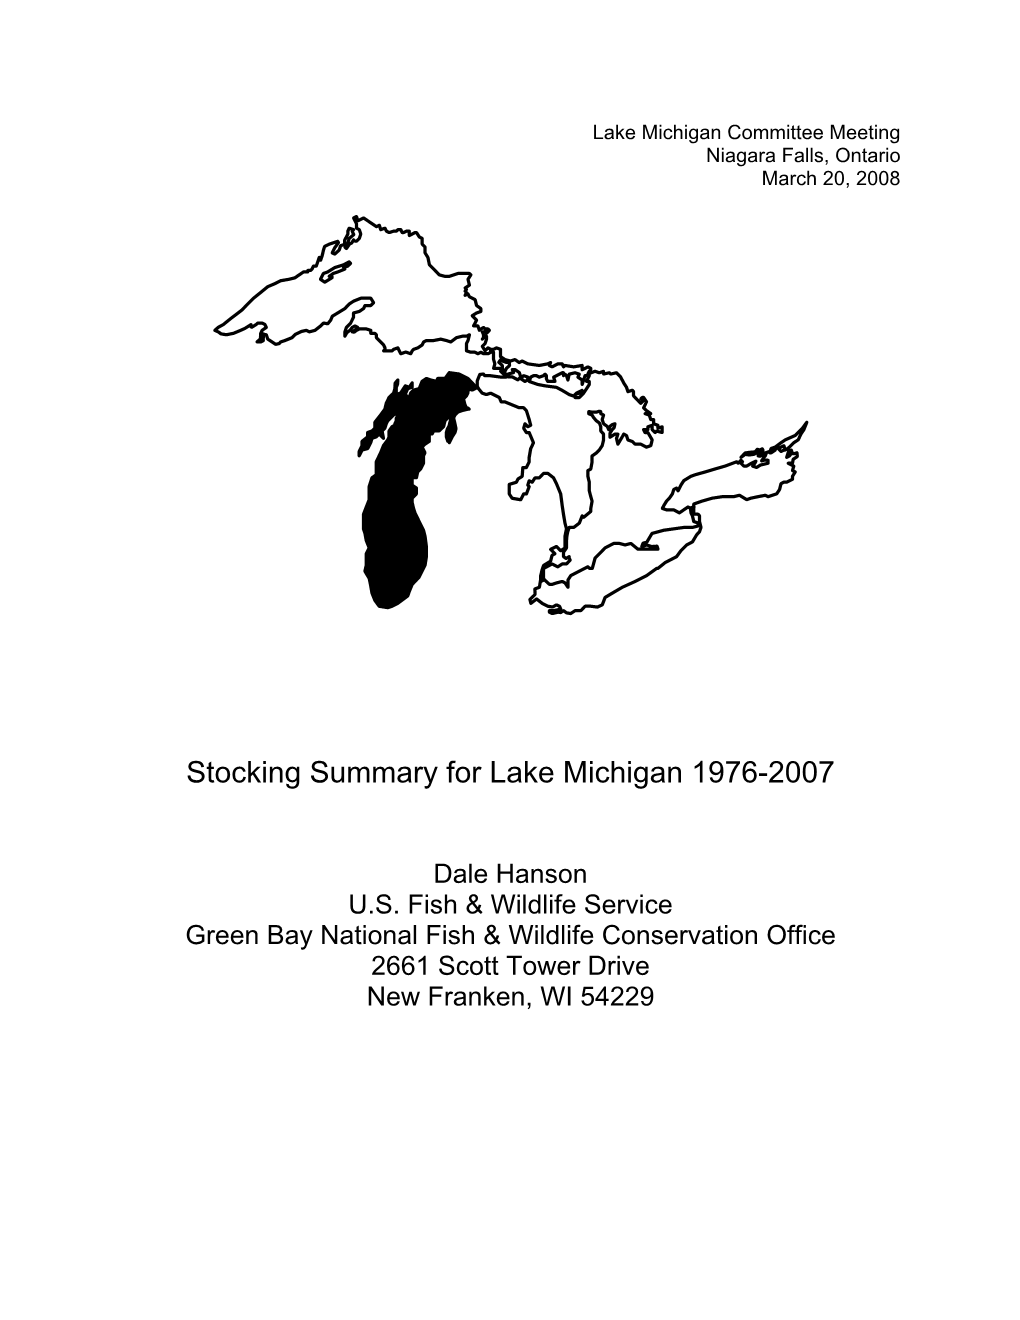 Lake Michigan Stocking Report 2007